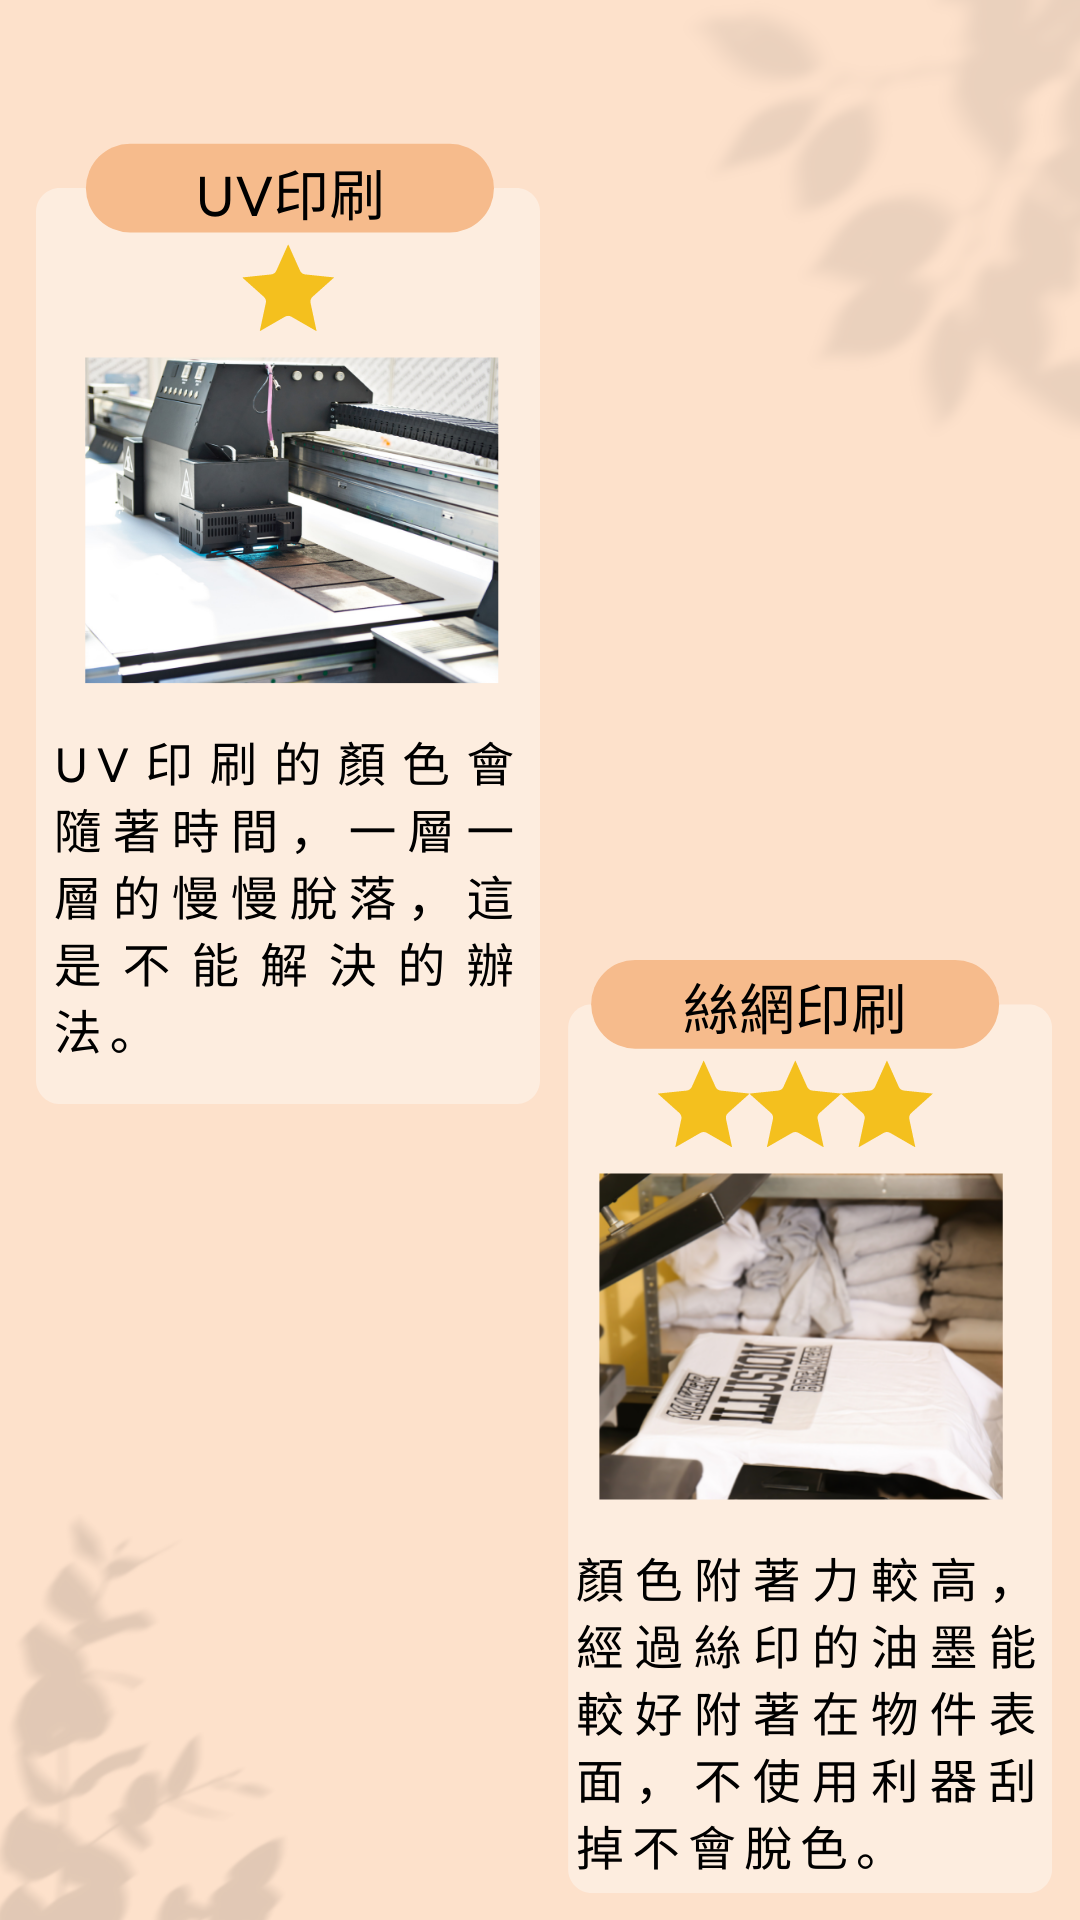 絲網印刷與UV印刷耐用性比較